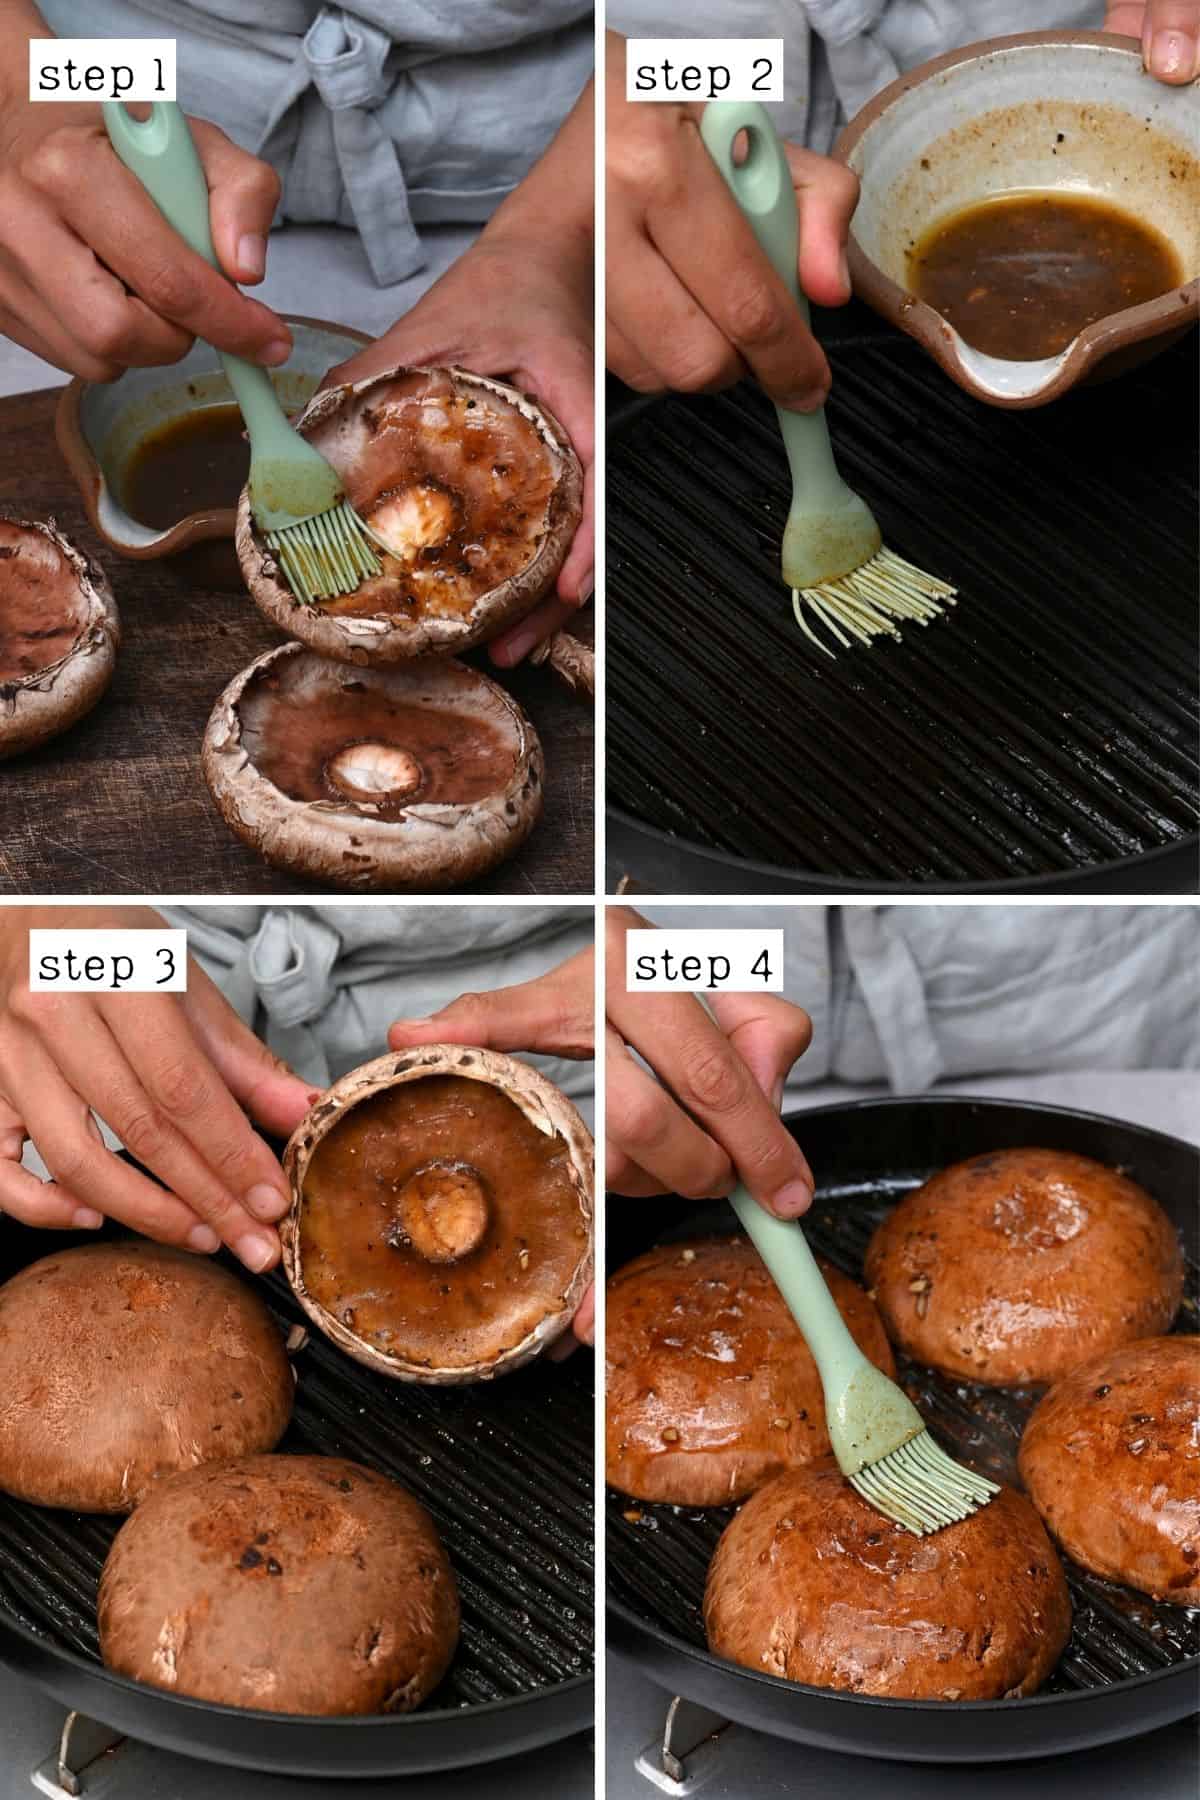 Steps for applying oil to mushrooms